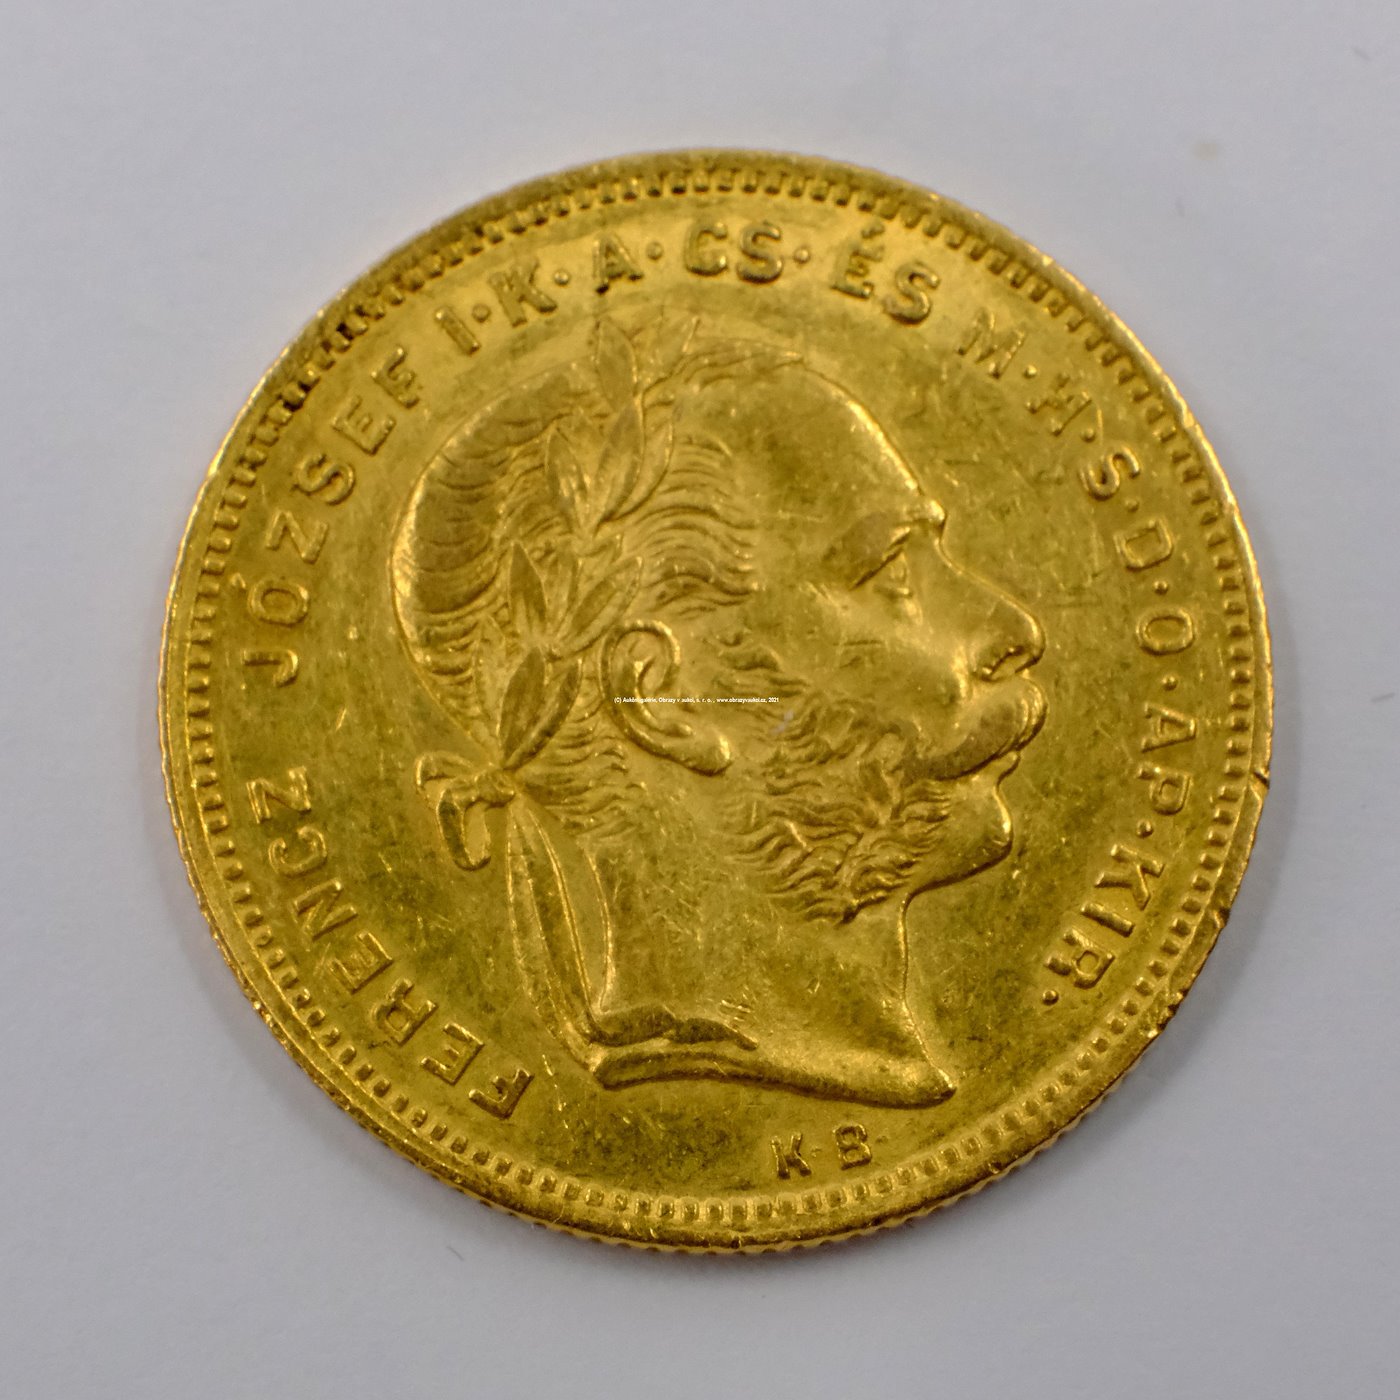 .. - Rakousko Uhersko zlatý 8 zlatník/20frank 1875 uherský. Zlato 900/1000, hrubá hmotnost mince 6,452g